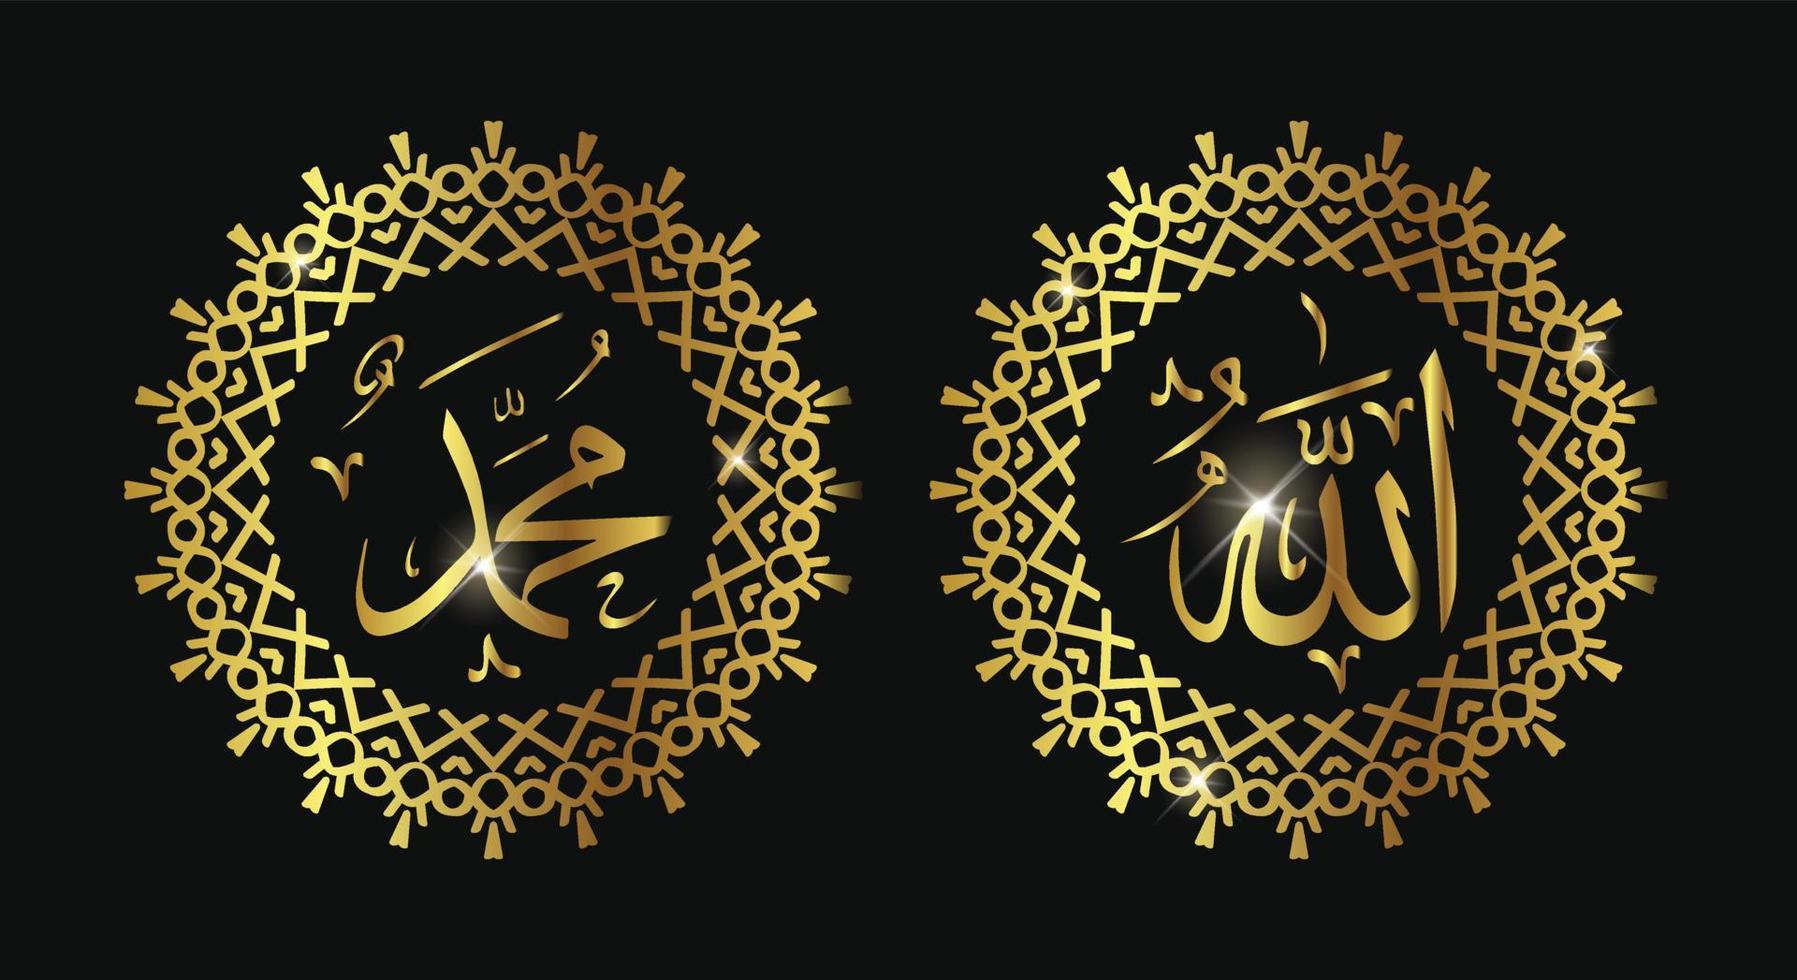 nombre caligráfico islámico de dios y nombre del profeta muhamad con color dorado o color de lujo vector